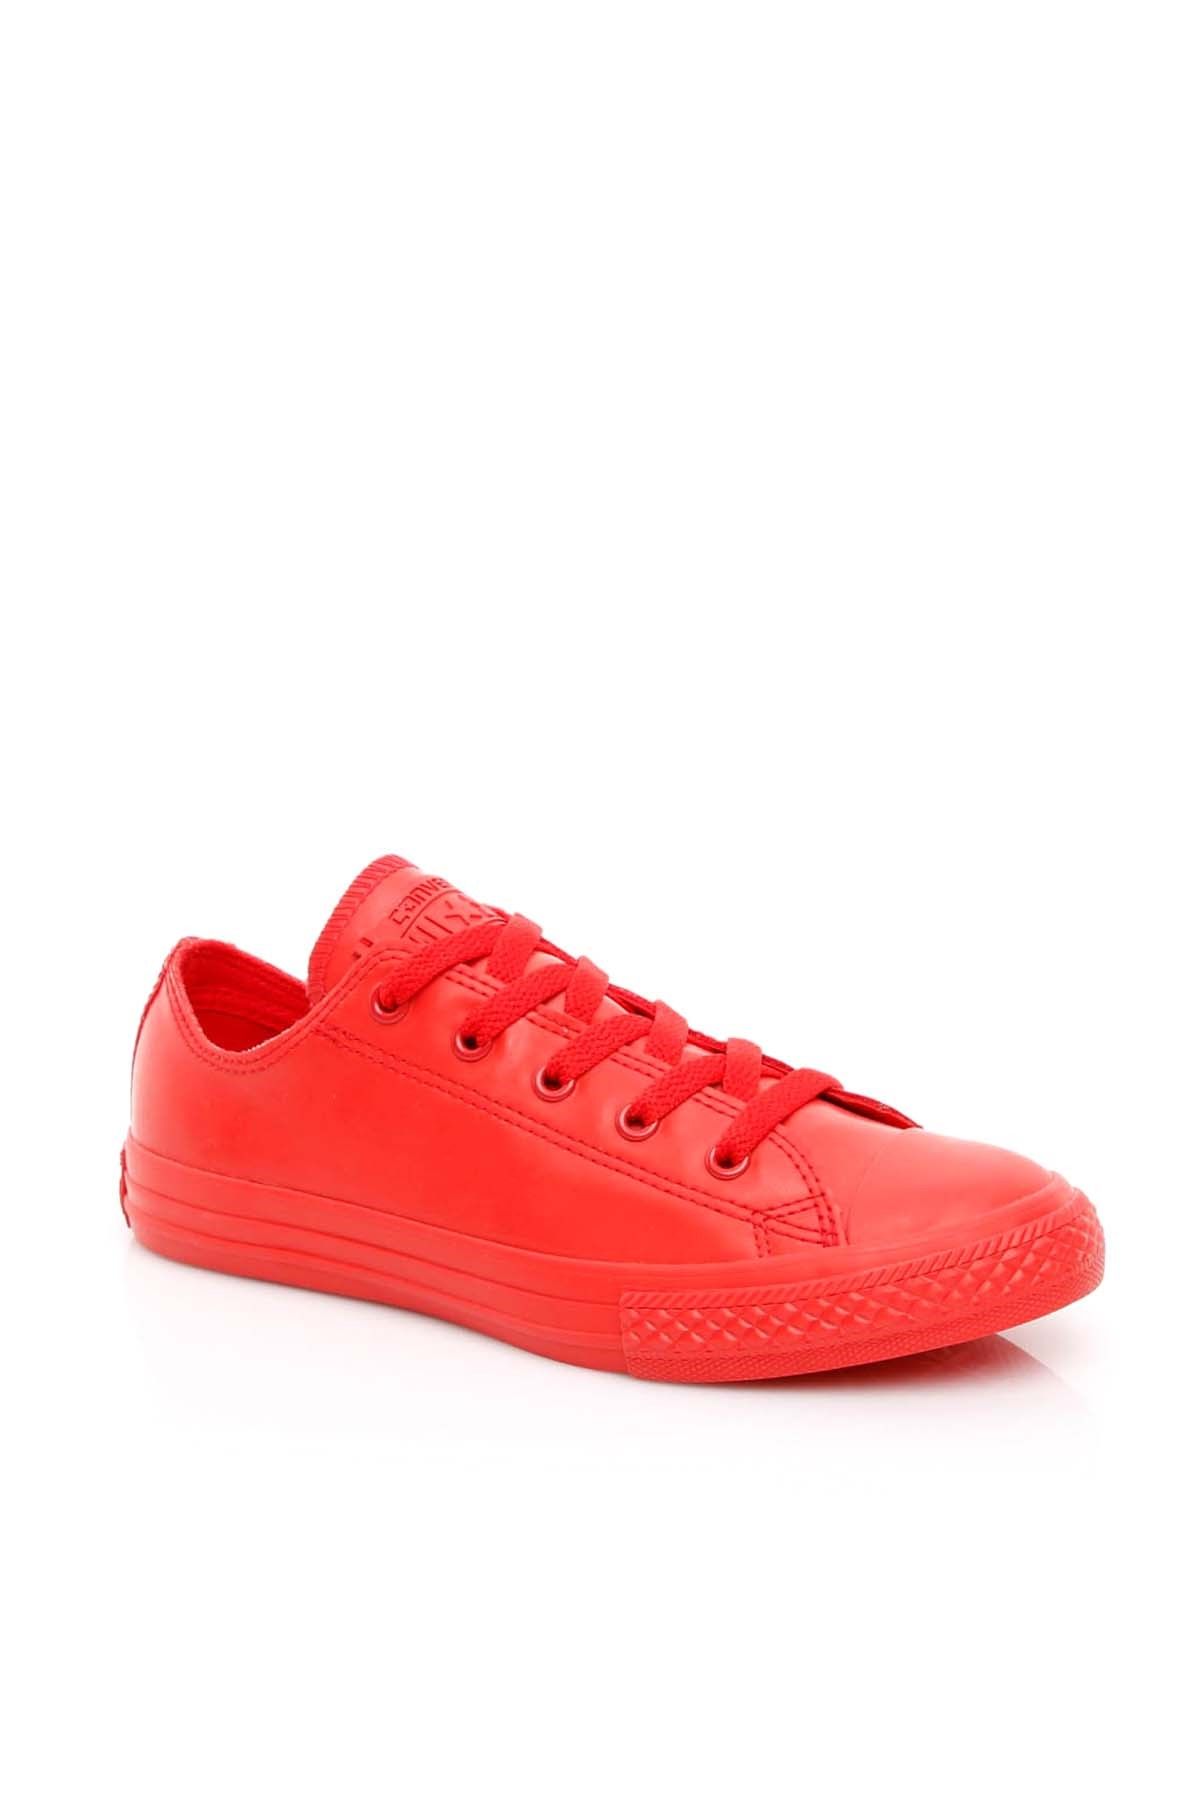 Converse Kırmızı Unisex Çocuk Ayakkabı 651796C